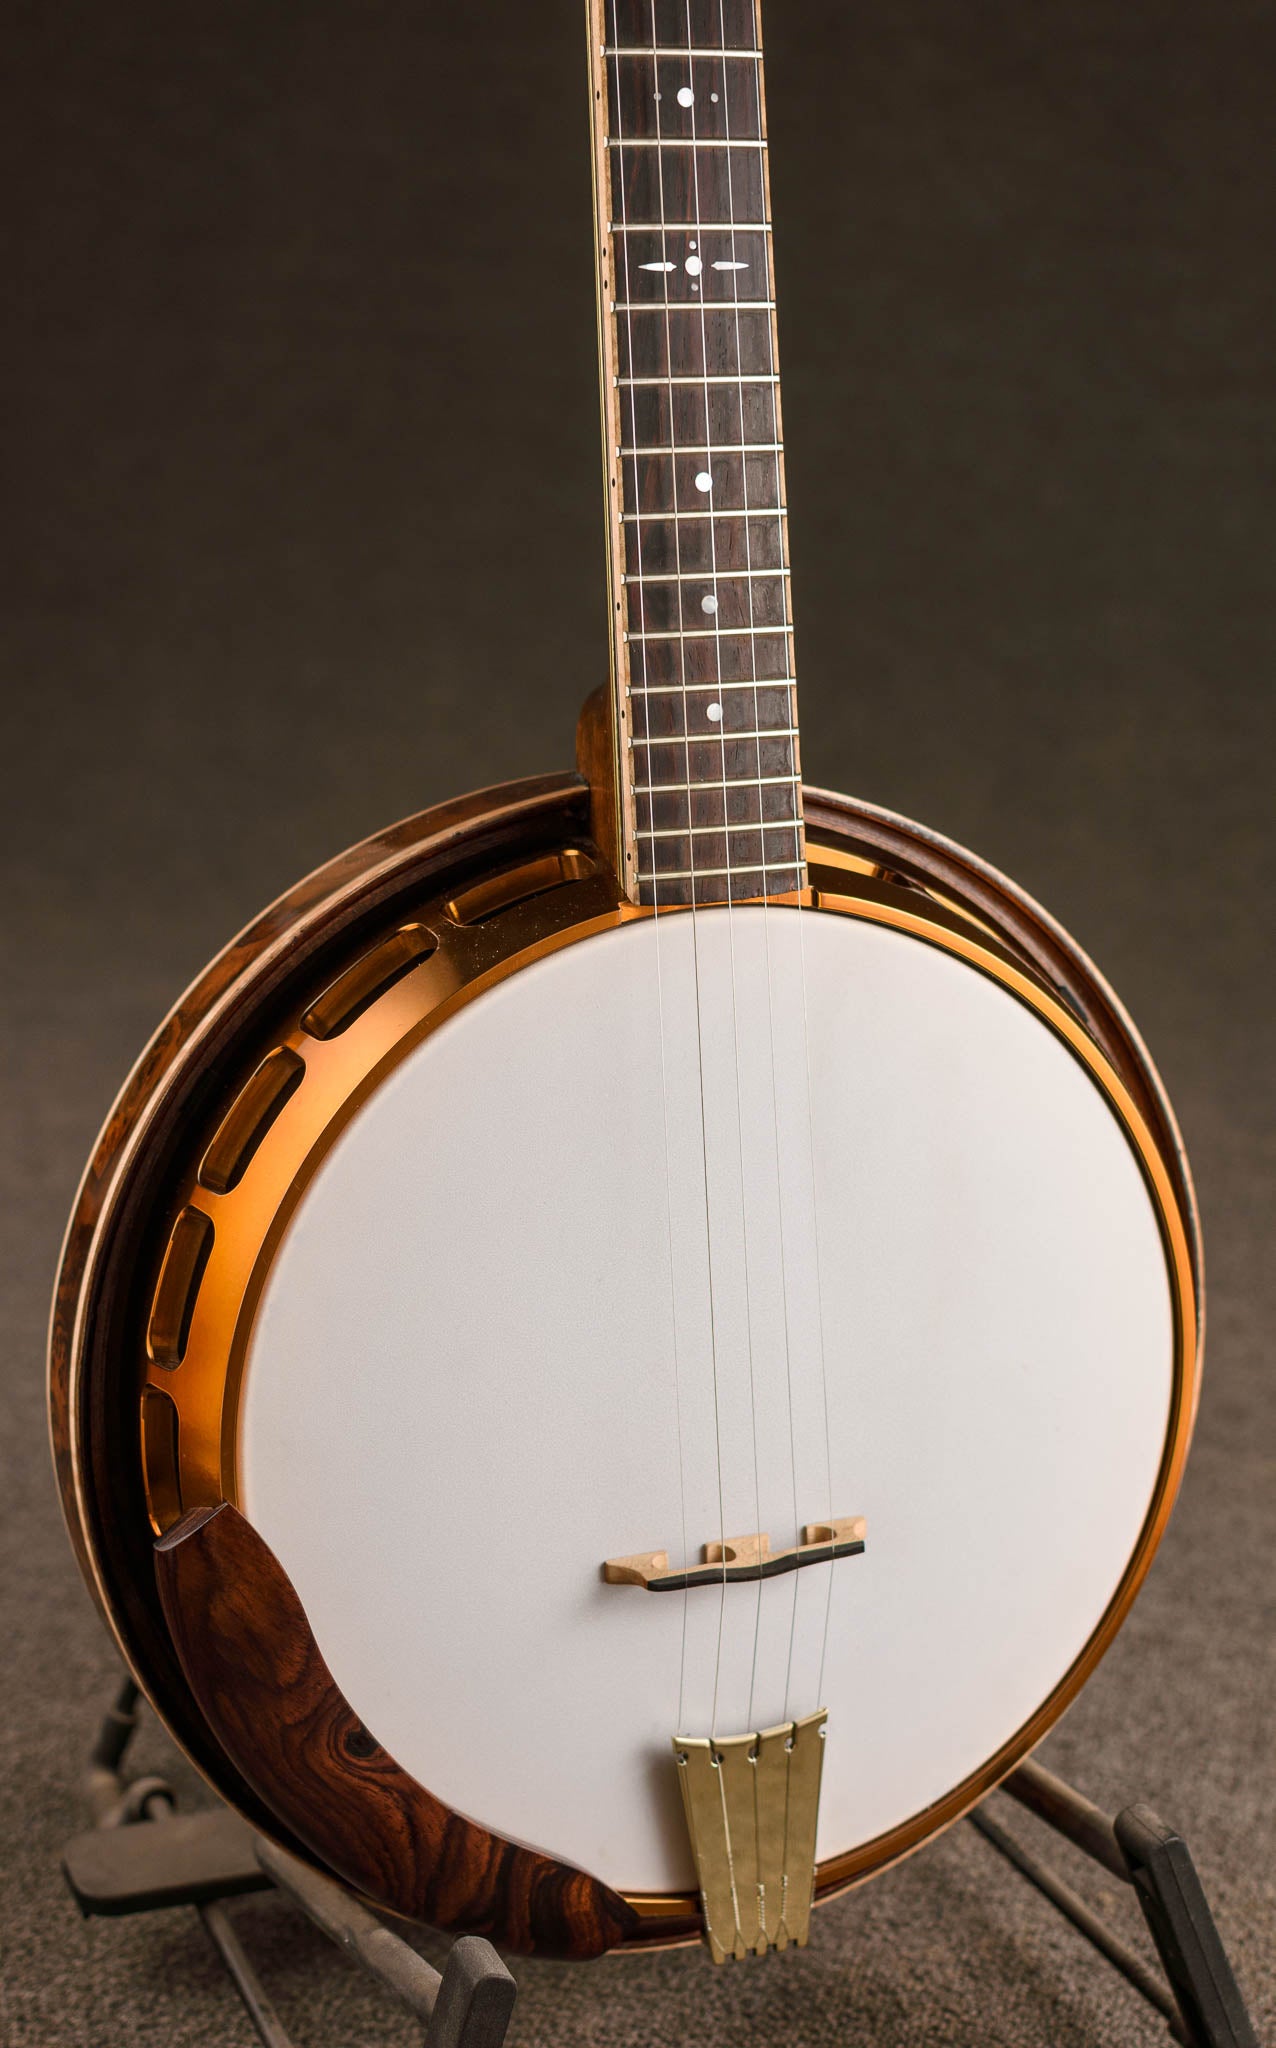 Tom Nechville's Custom Nuvo Banjo